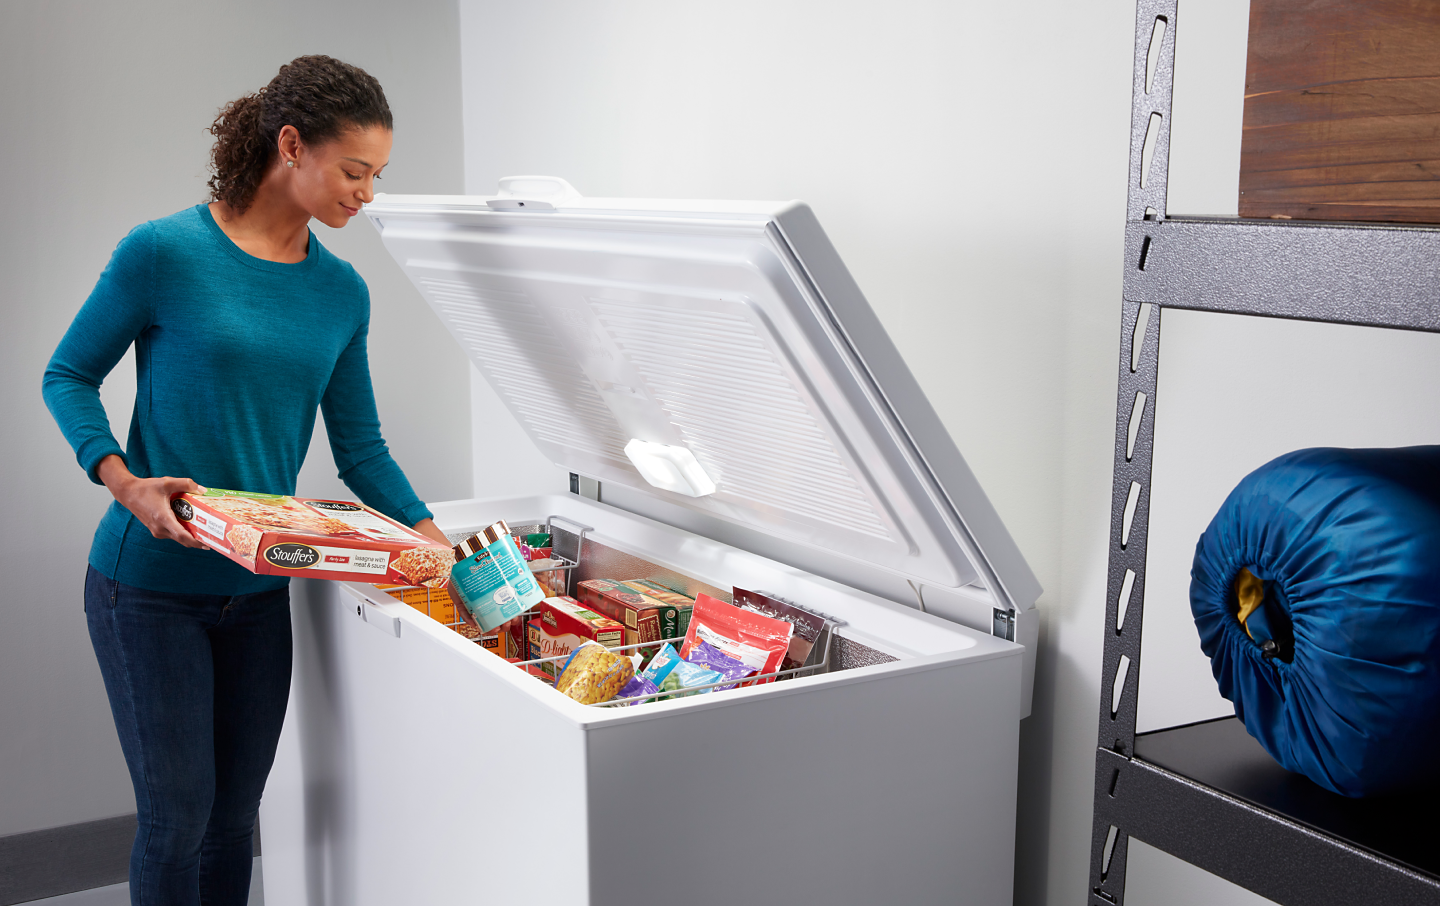 Chest Freezer 3.5 cu/ft. - appliances - by owner - sale - craigslist